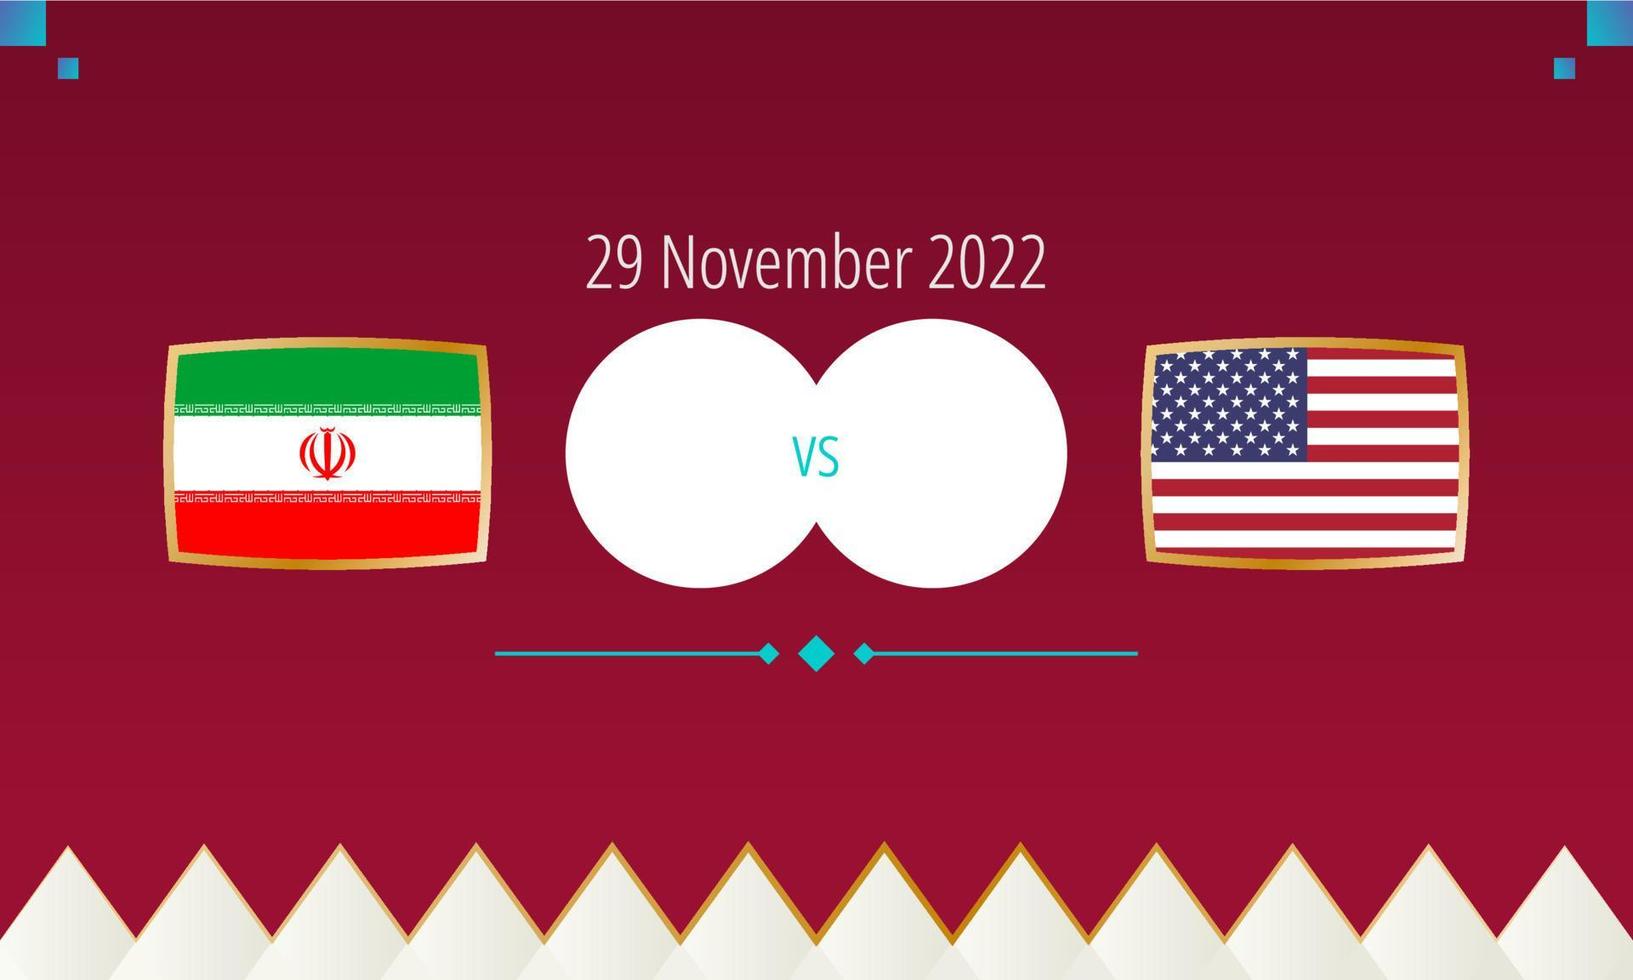 iran mot förenad stater fotboll match, internationell fotboll konkurrens 2022. vektor